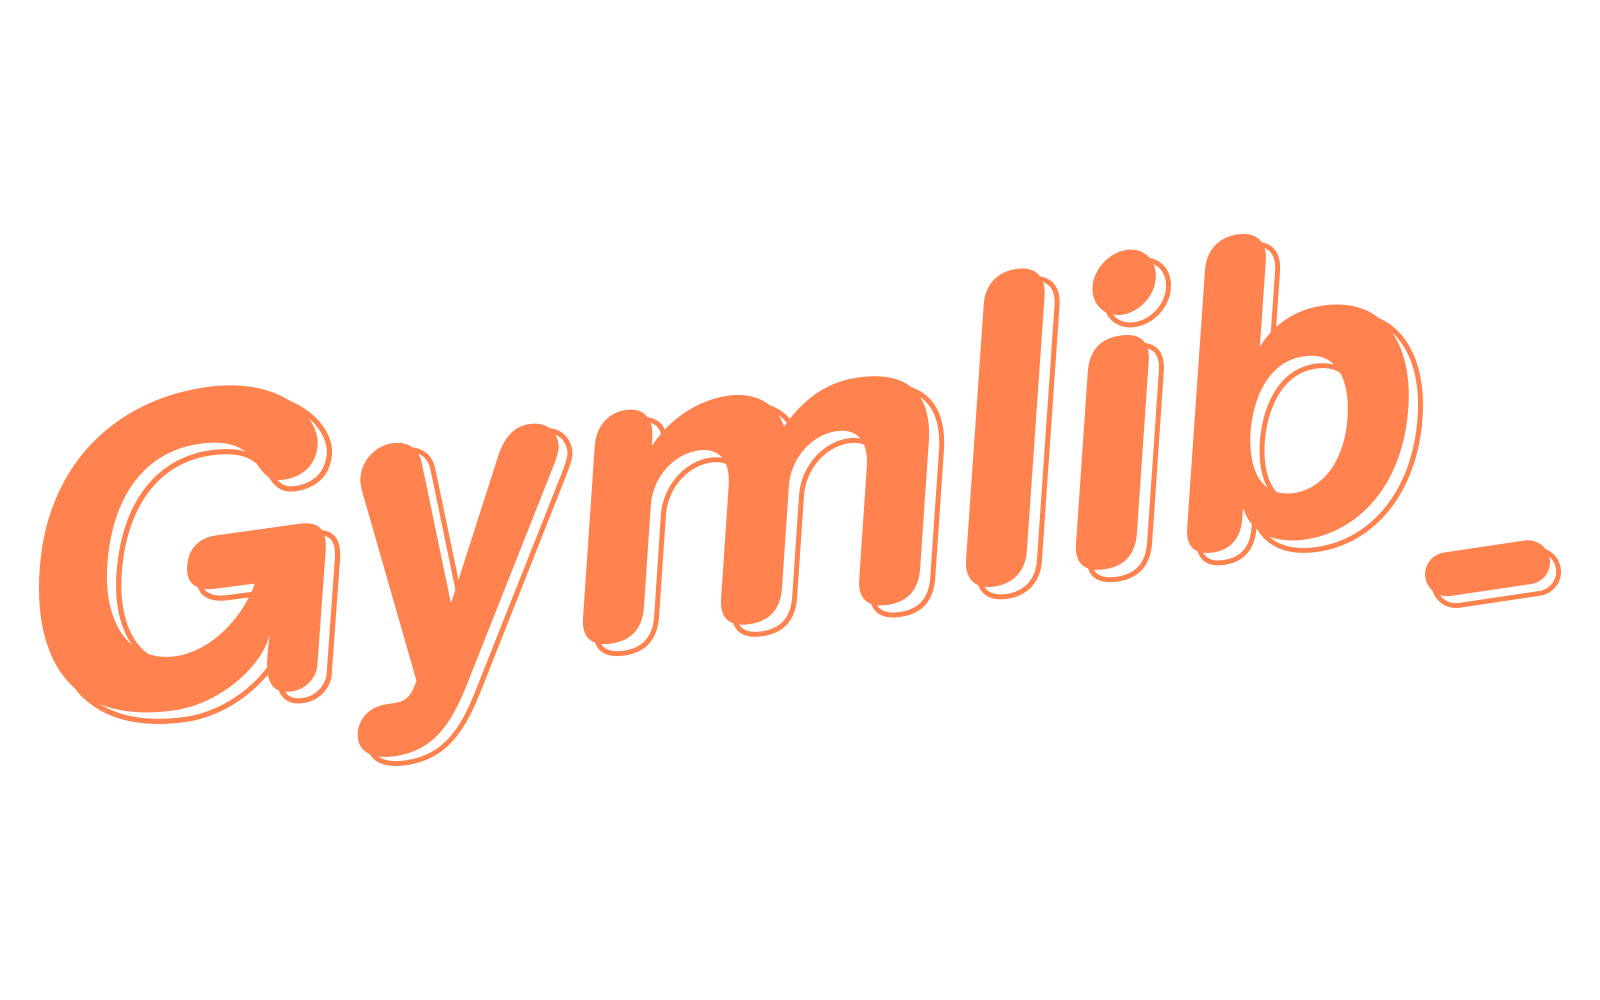 Gymlib